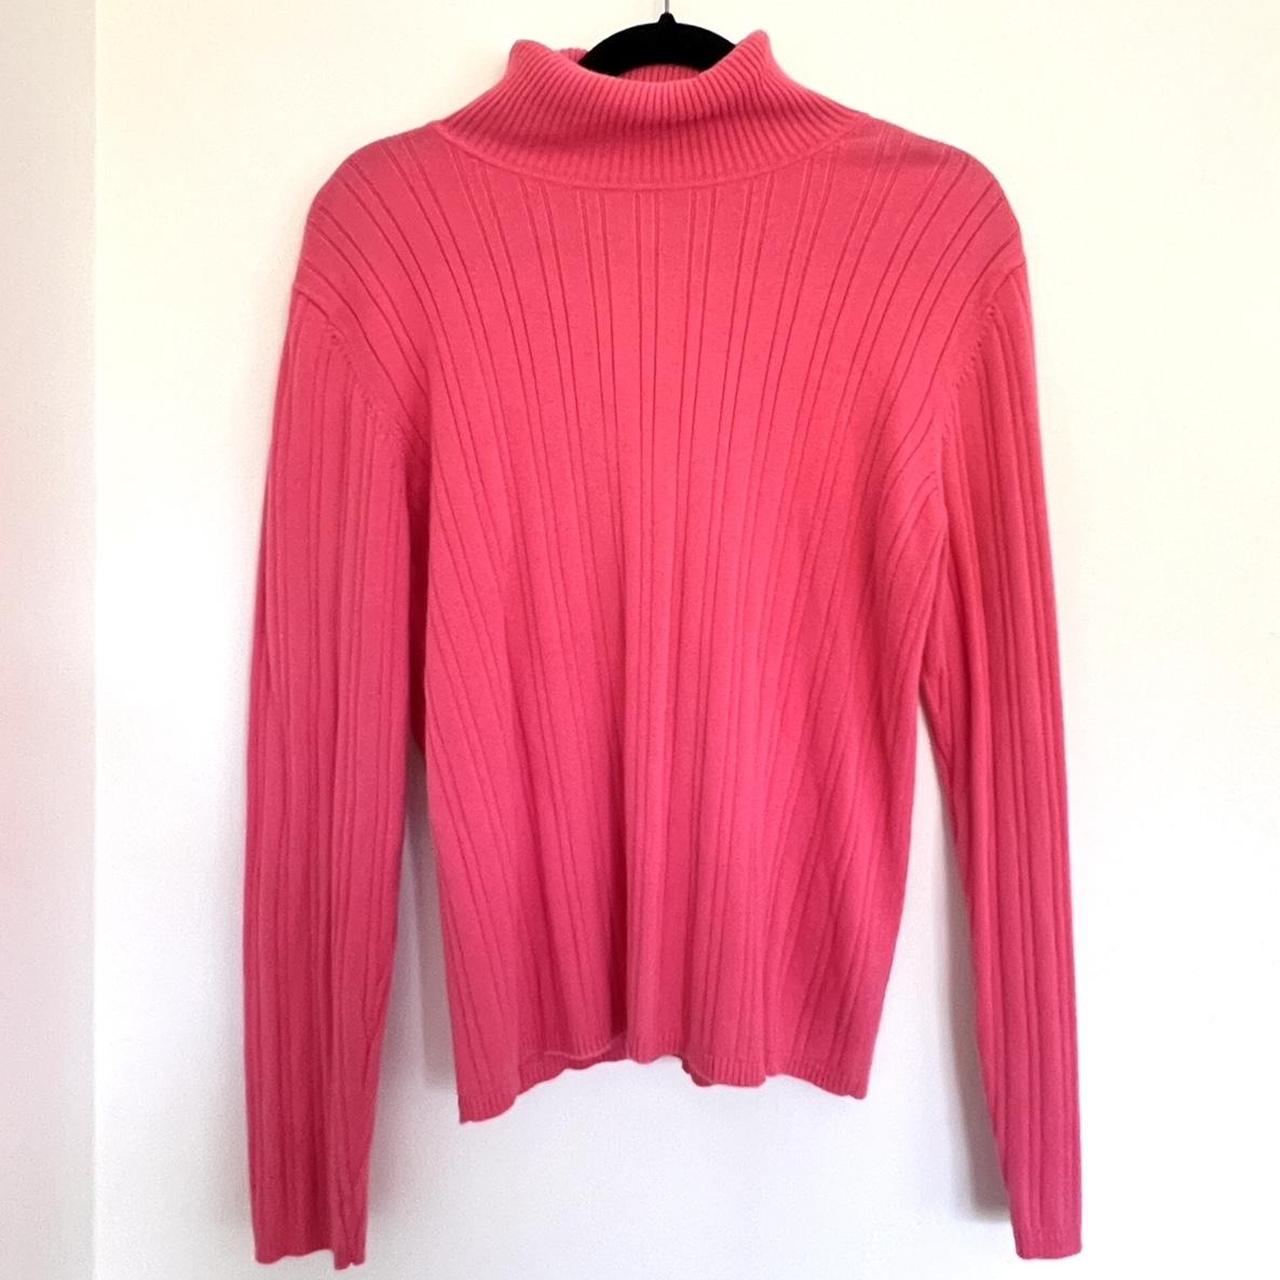 Talbots pink turtle neck sweater. 100% cotton. Soft... - Depop